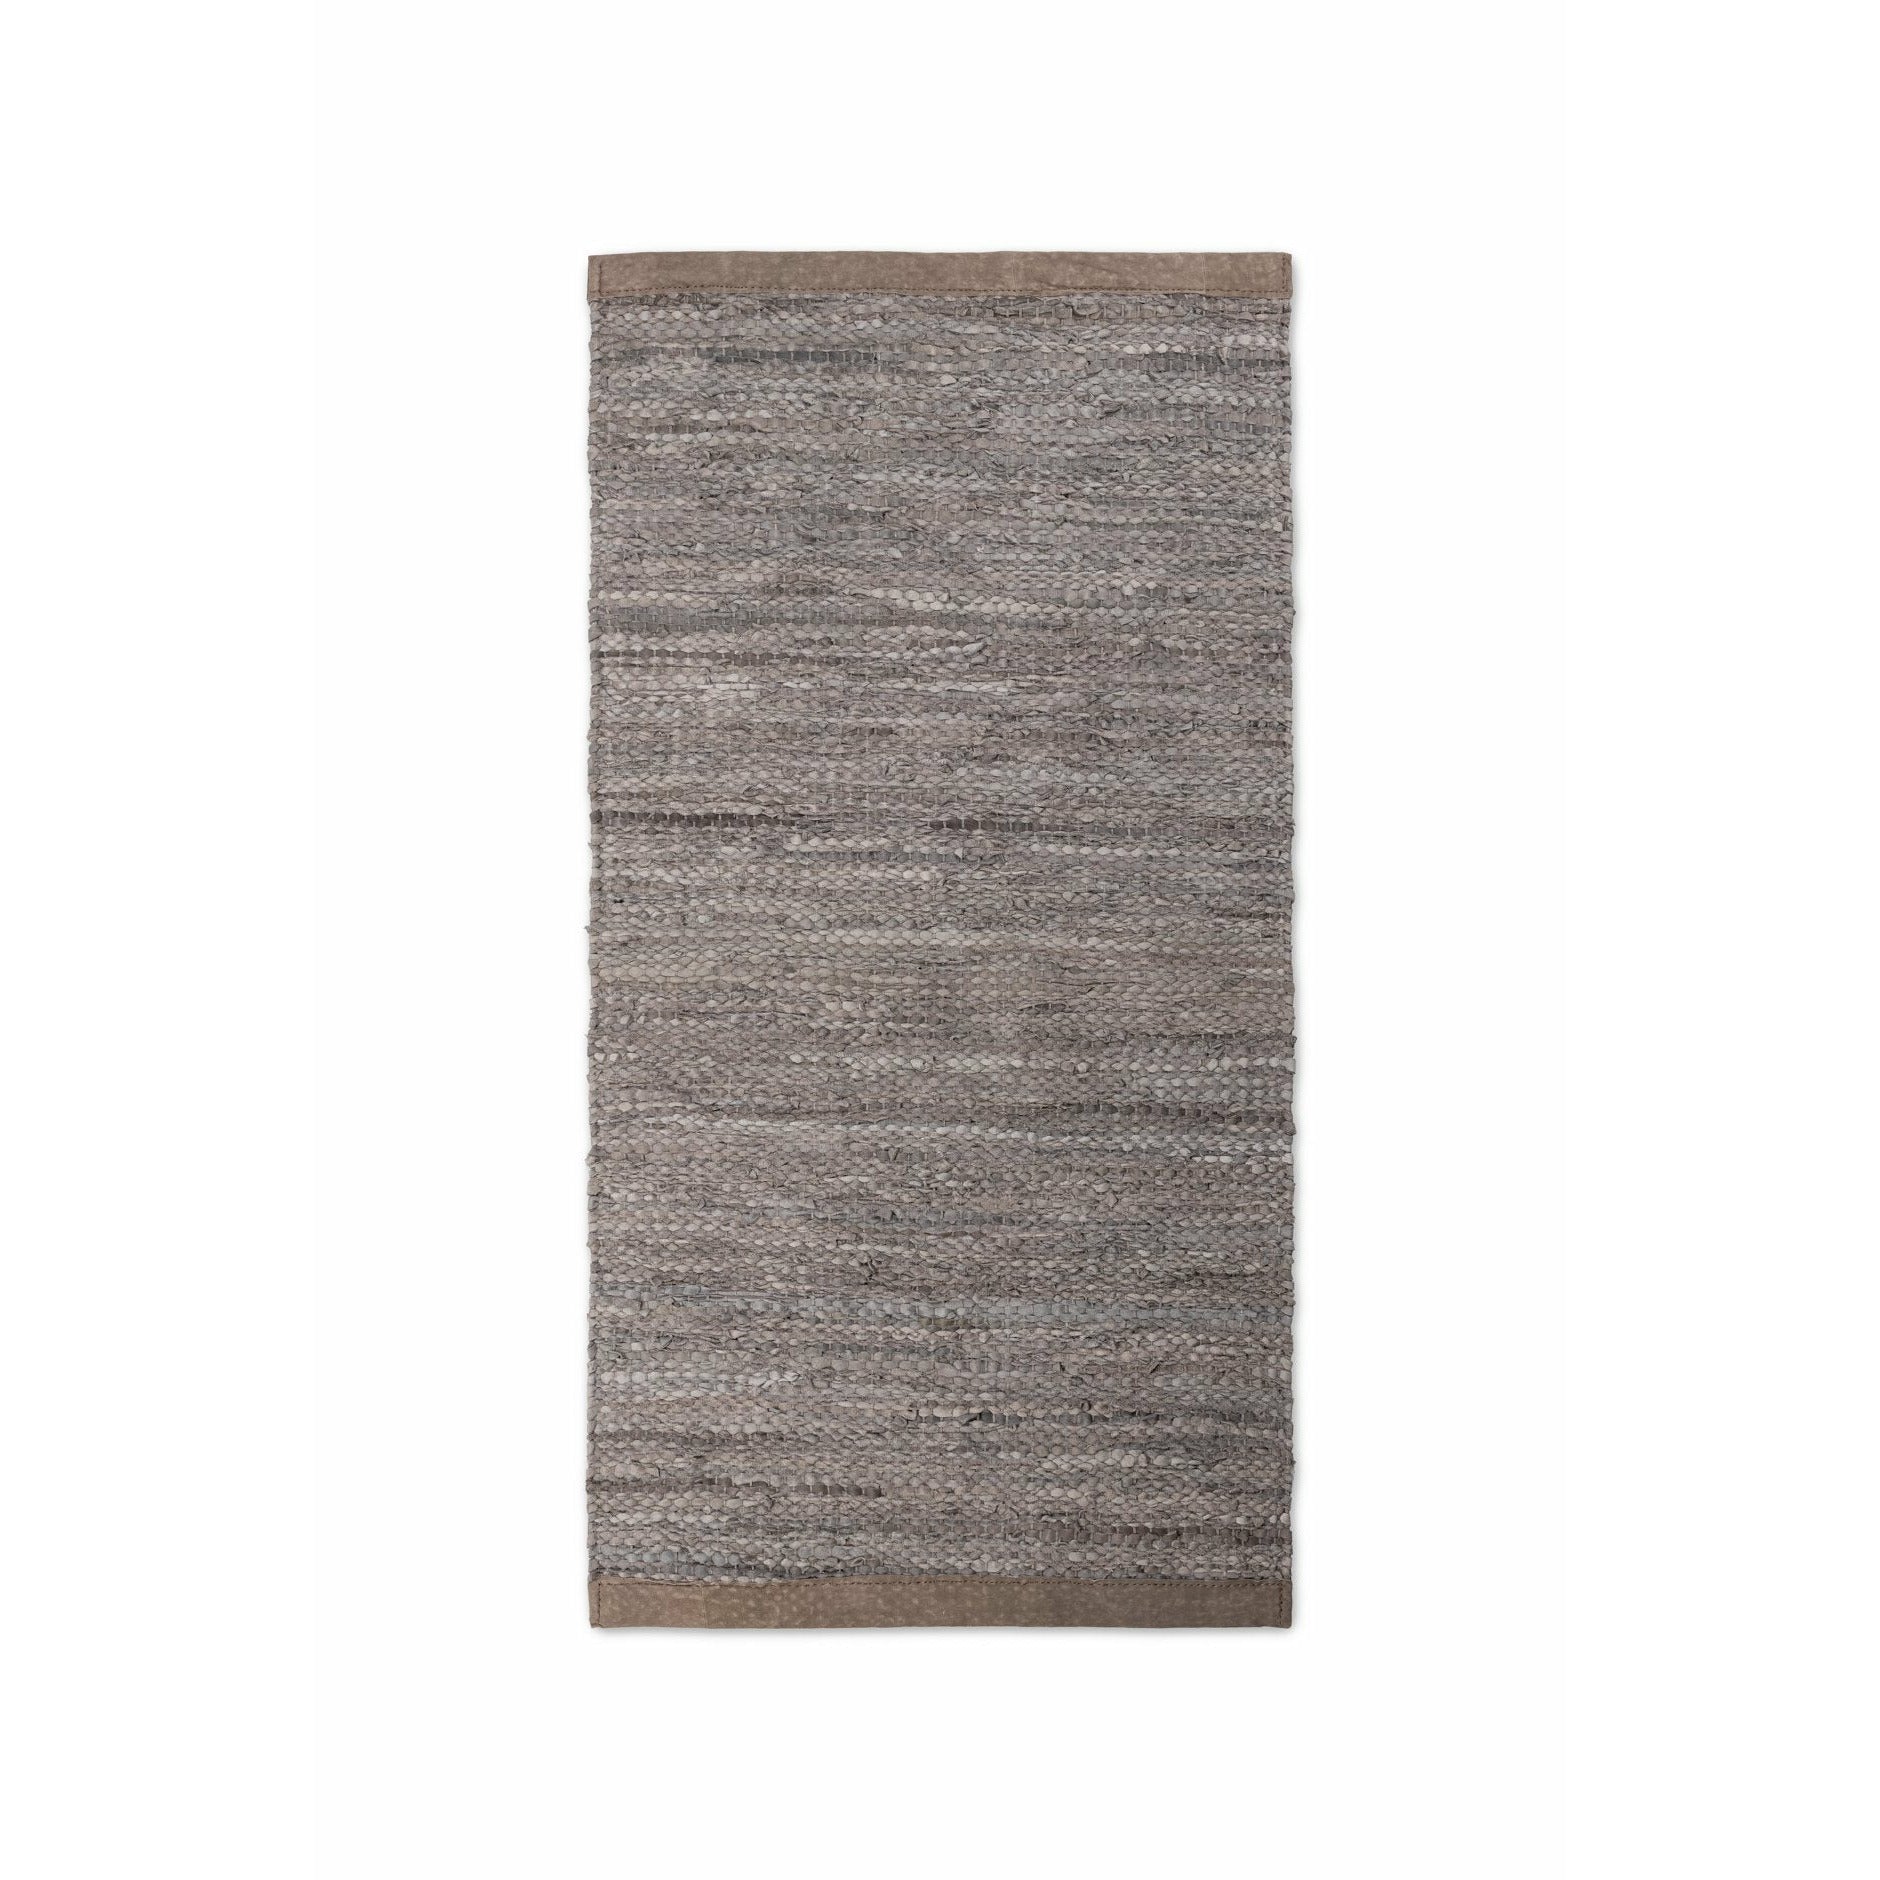 Tappeto in legno con moquette in pelle solida, 170 x 240 cm